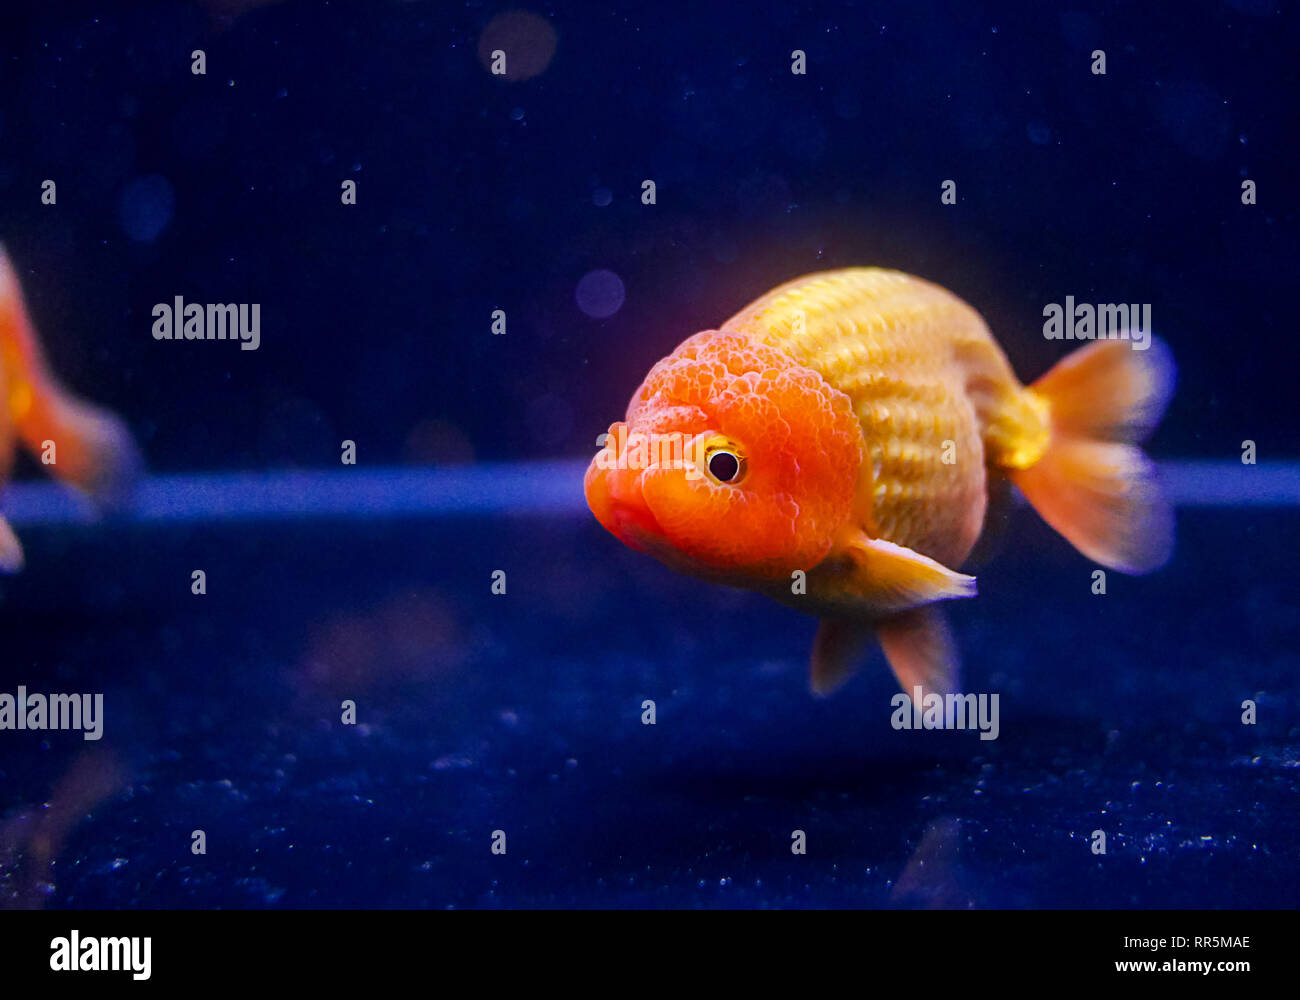 Pesce rosso leone immagini e fotografie stock ad alta risoluzione - Alamy